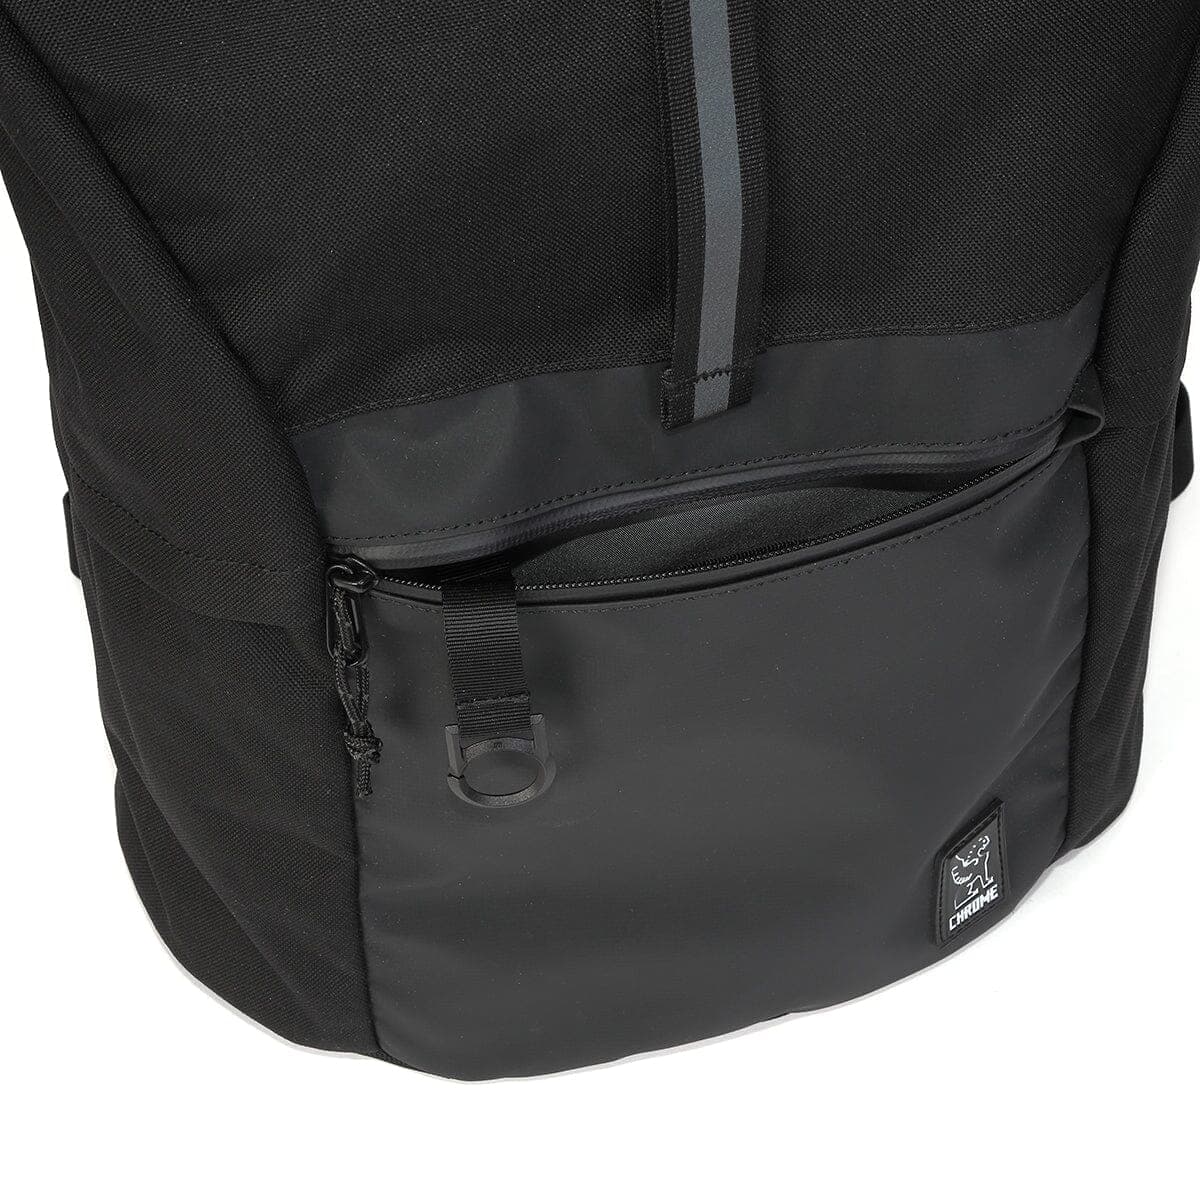 Yalta backpack bottom external zipper open